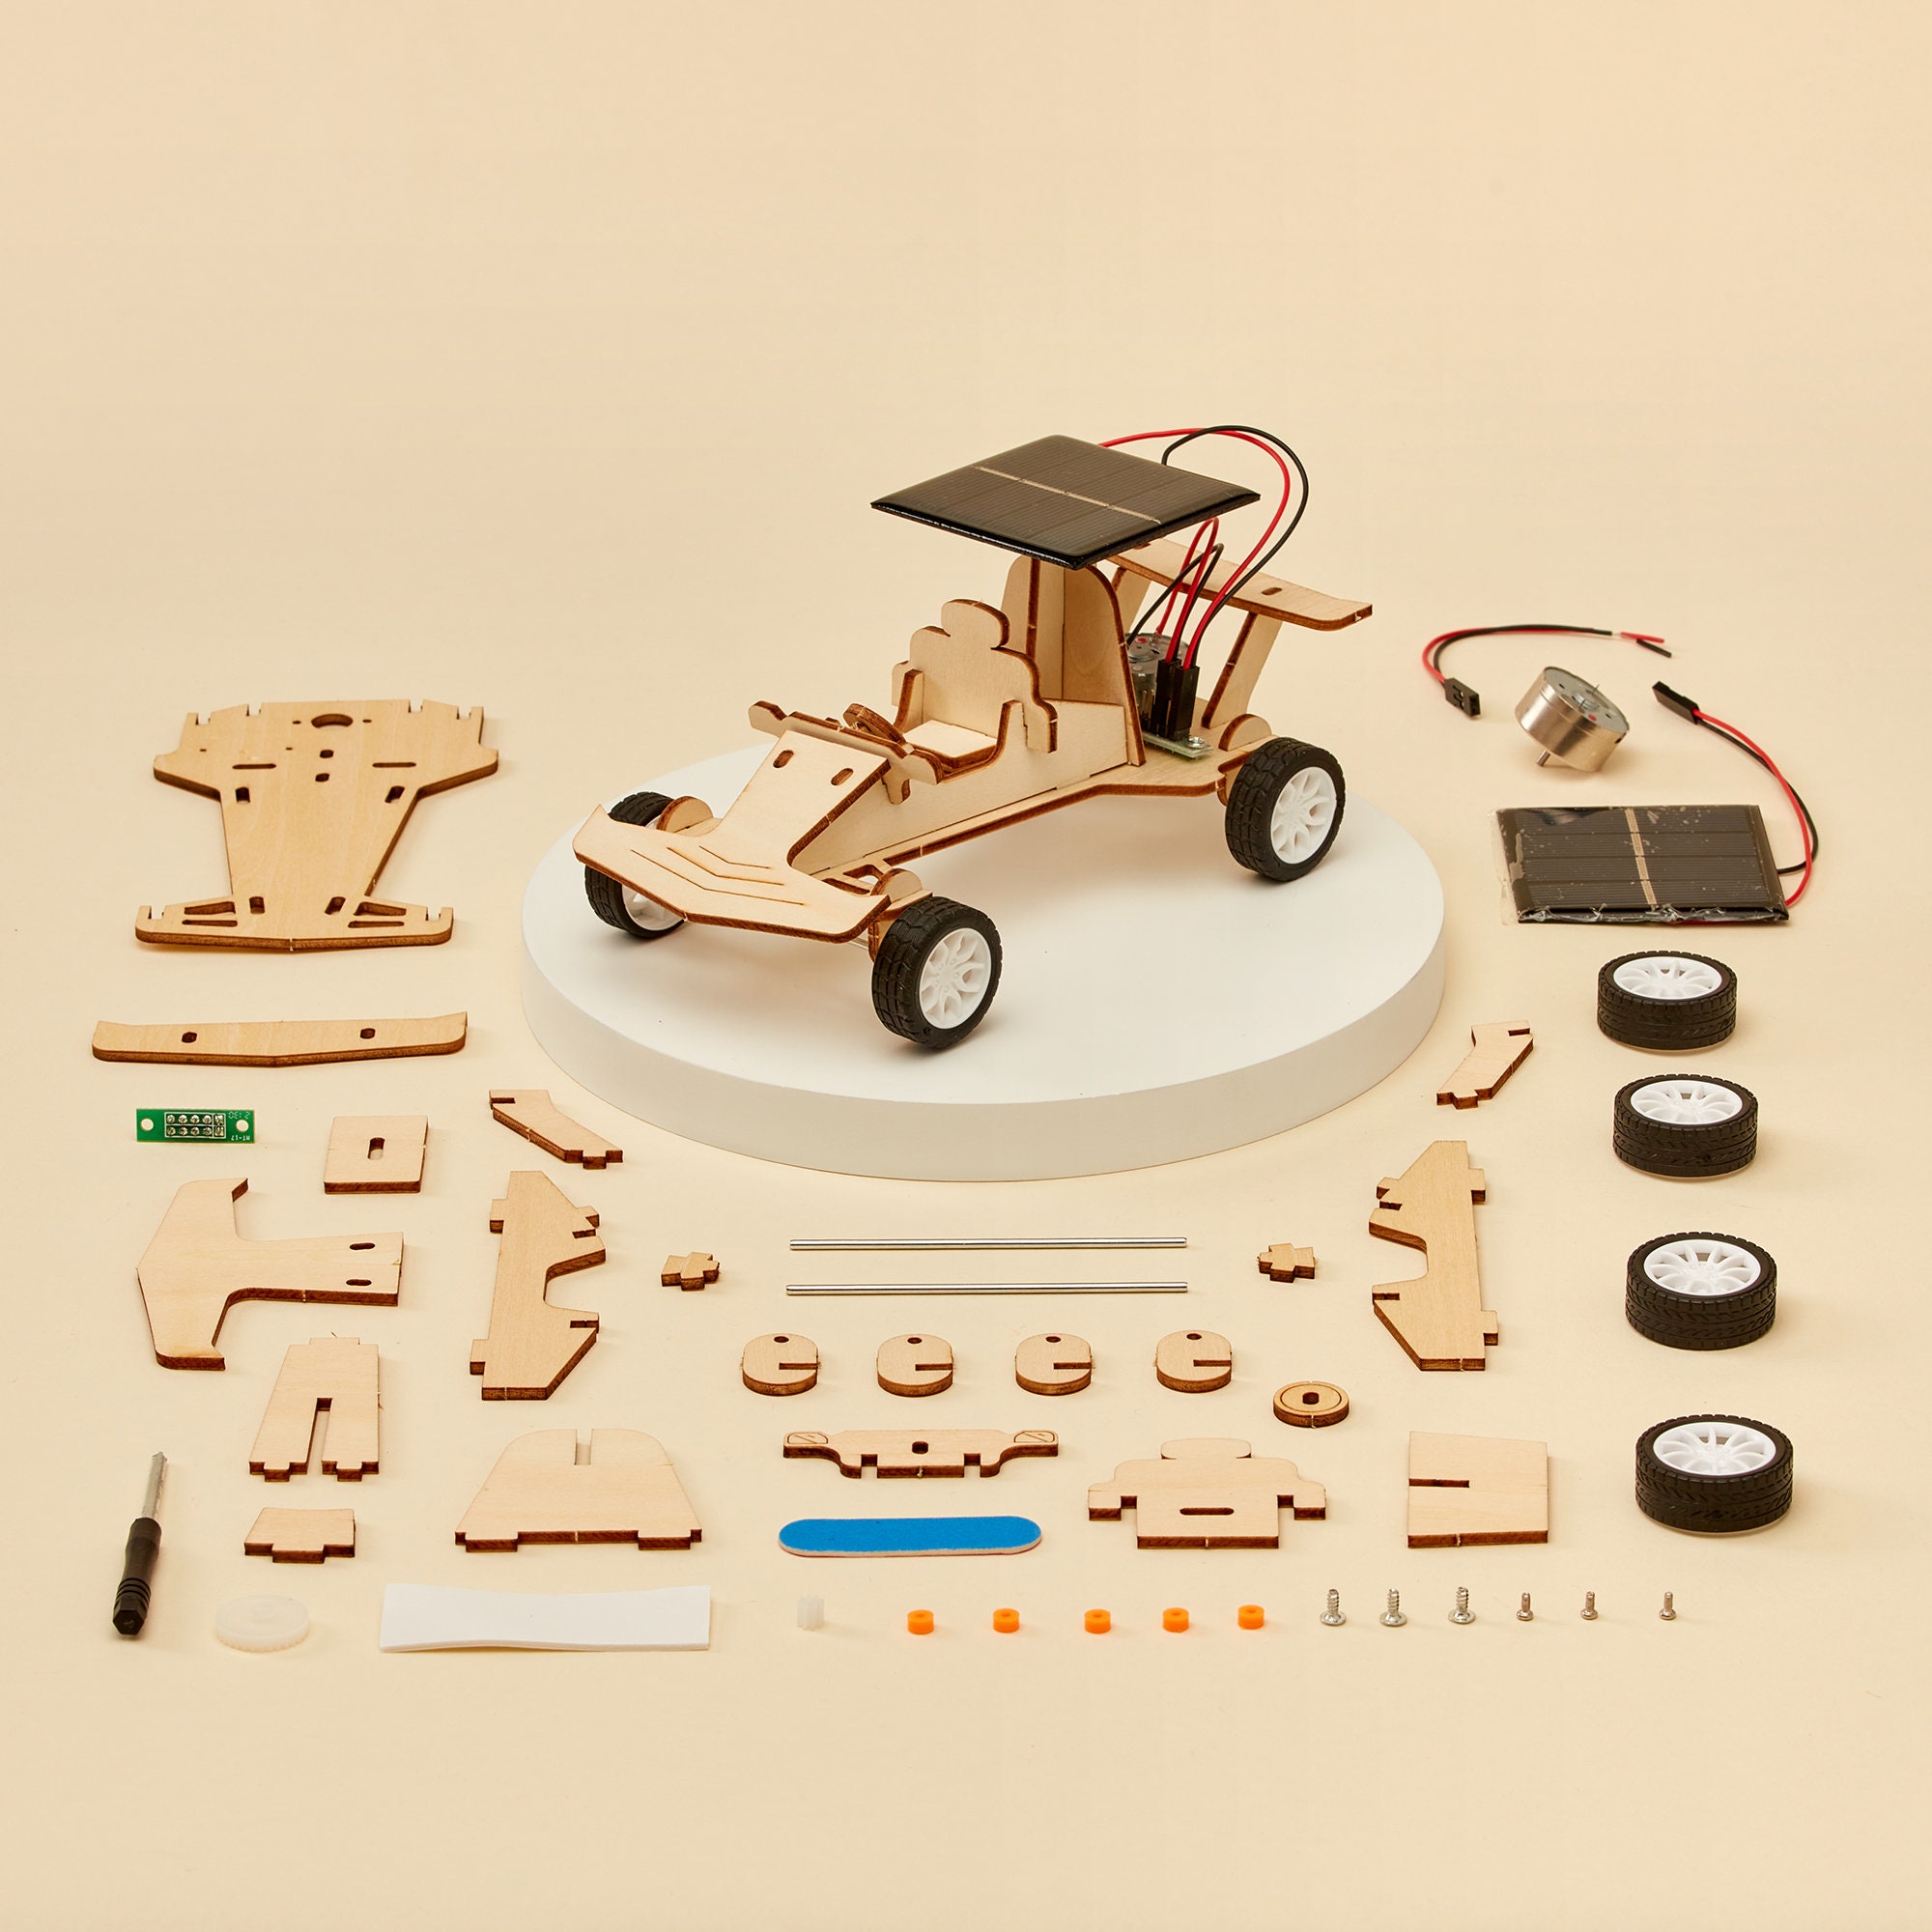 The Crafty Scientist: DIY Car Essentials Box